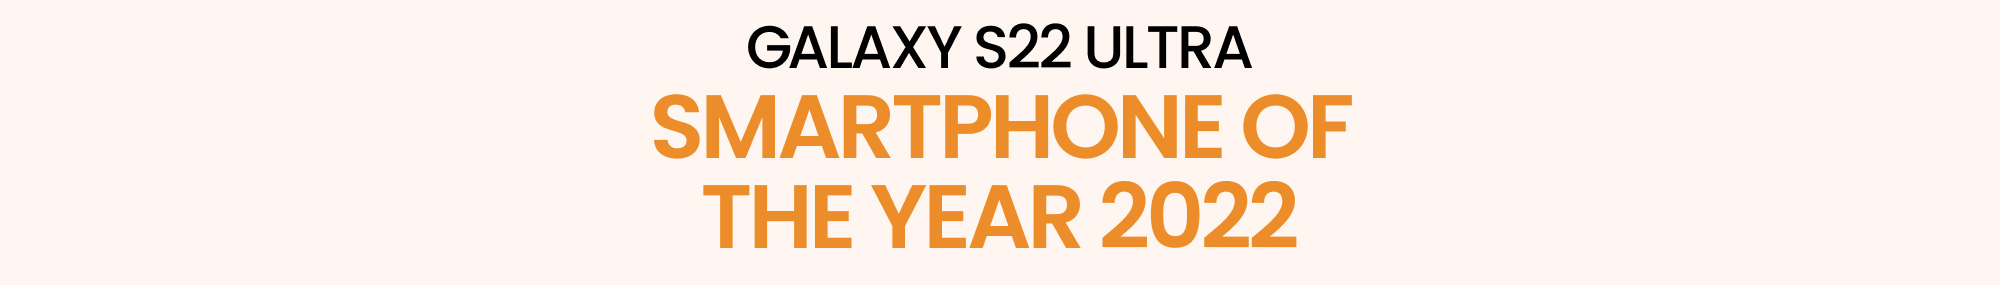 Smartphone of the Year 2022: Nhìn lại Galaxy S22 Ultra và cùng chào đón Galaxy S 2023! - Ảnh 2.